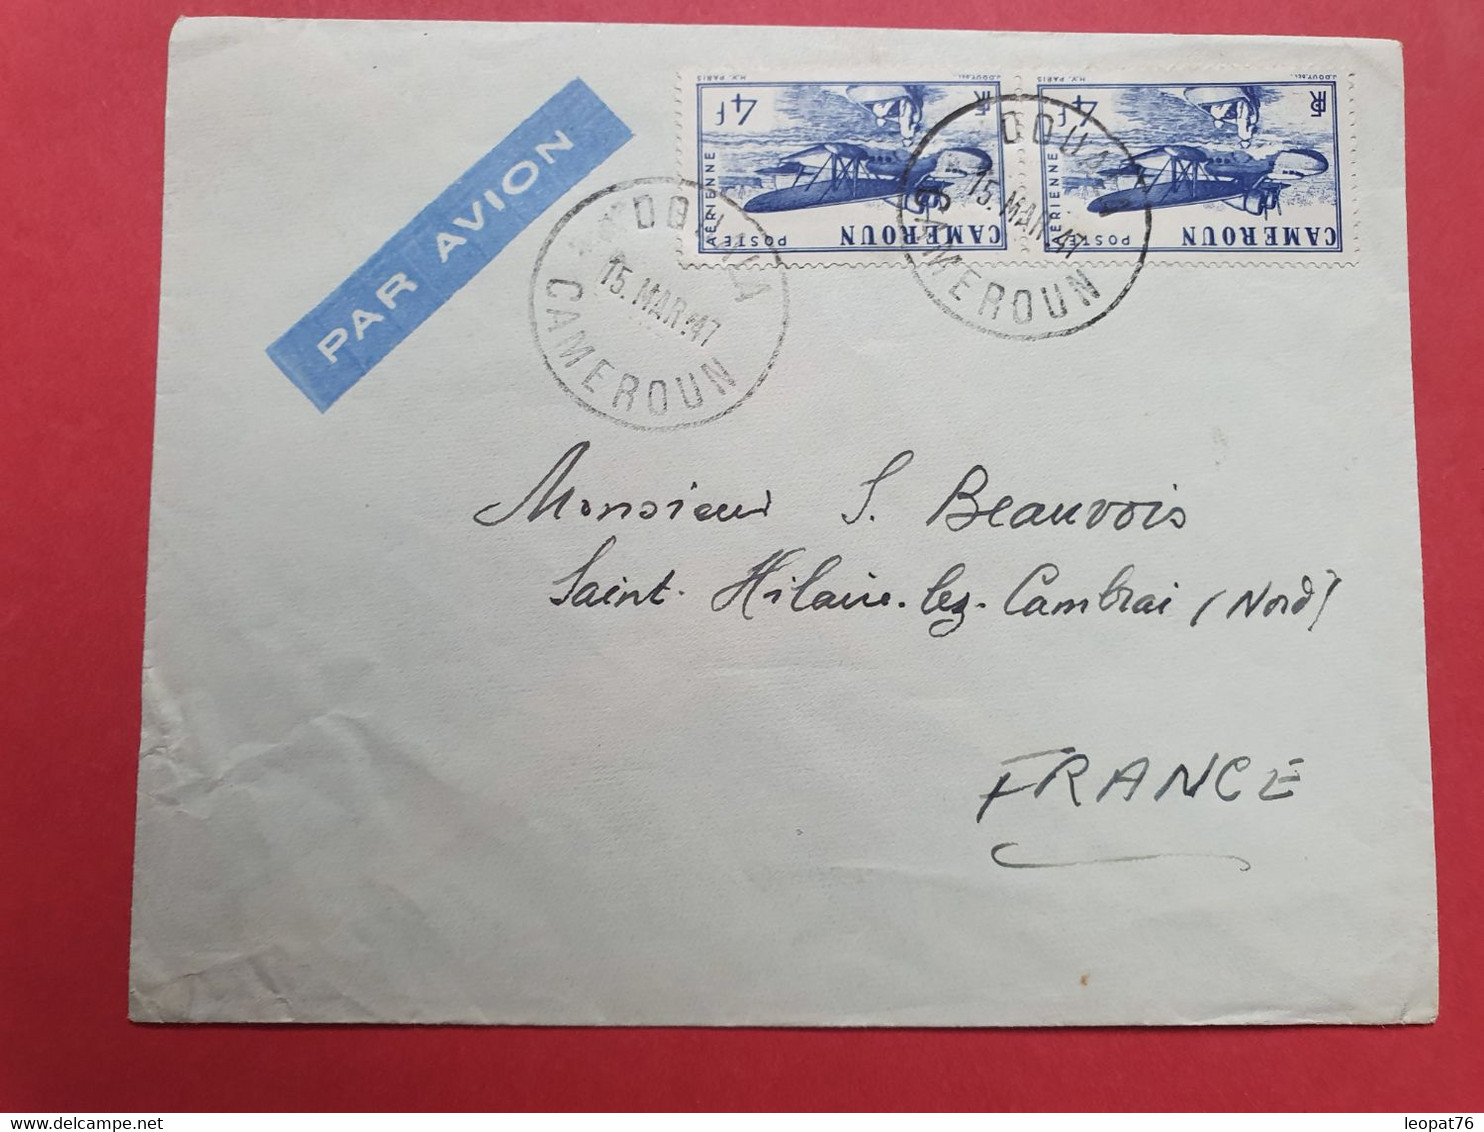 Cameroun - Enveloppe De Douala Pour La France En 1947 - N 33 - Covers & Documents